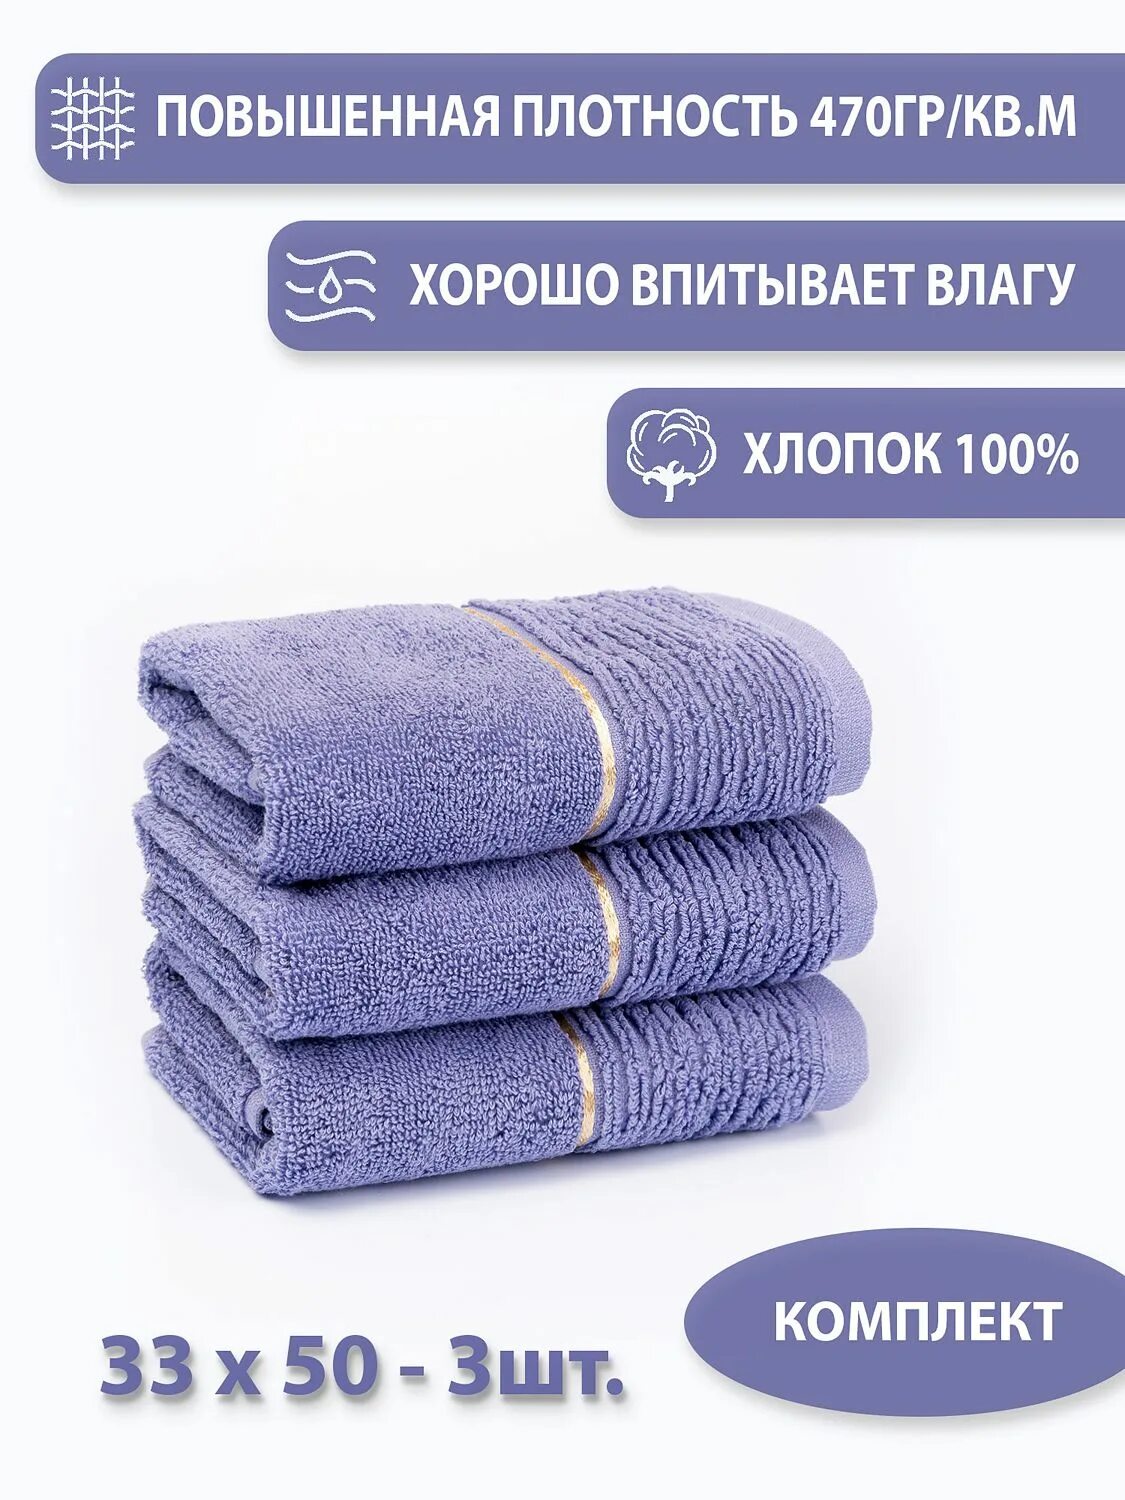 Плотное полотенце. Aisha Home Textile полотенце. Плотность махрового полотенца. Полотенце с плотностью 420. Плотность для полотенец лучшая махровых.